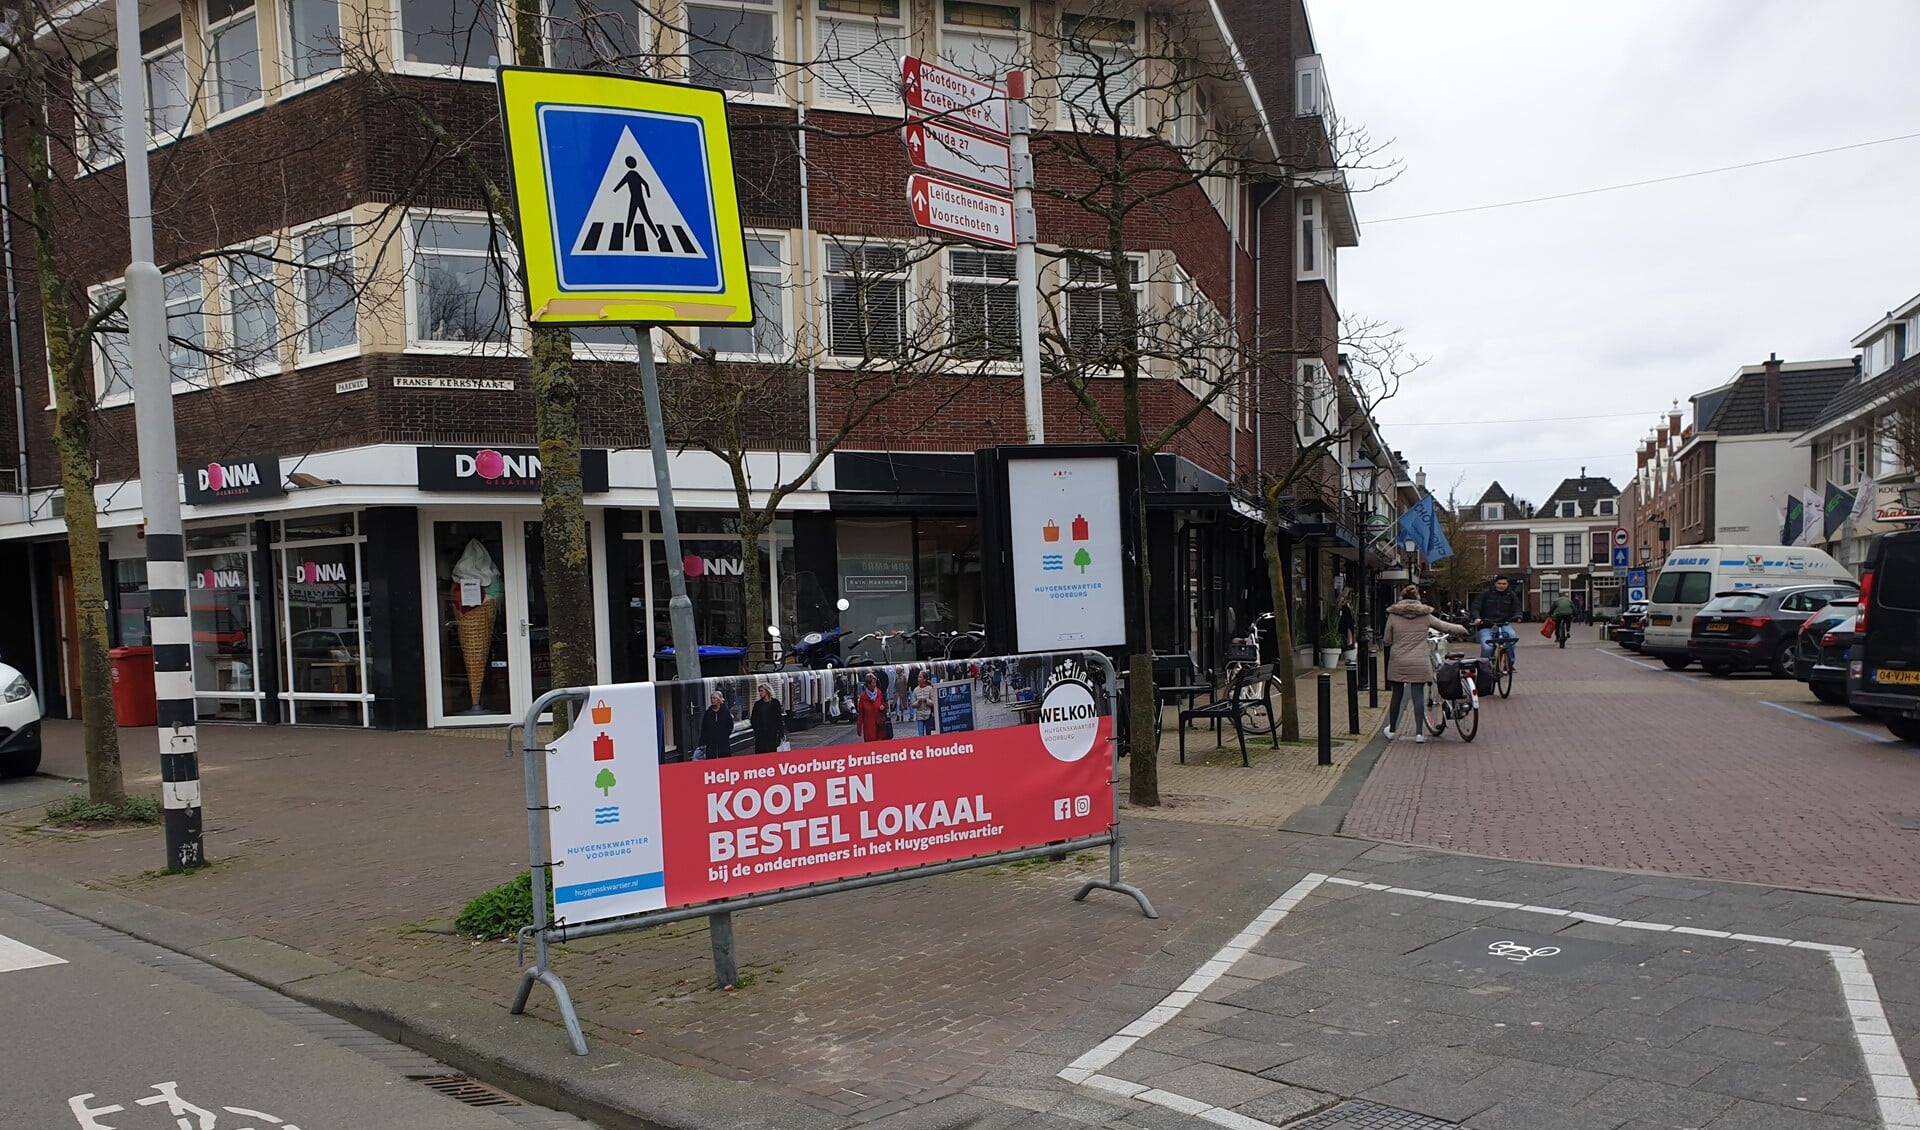 Oproep om lokaal te kopen en t bestellen in het Huygenskwartier in Voorburg (foto: pr).